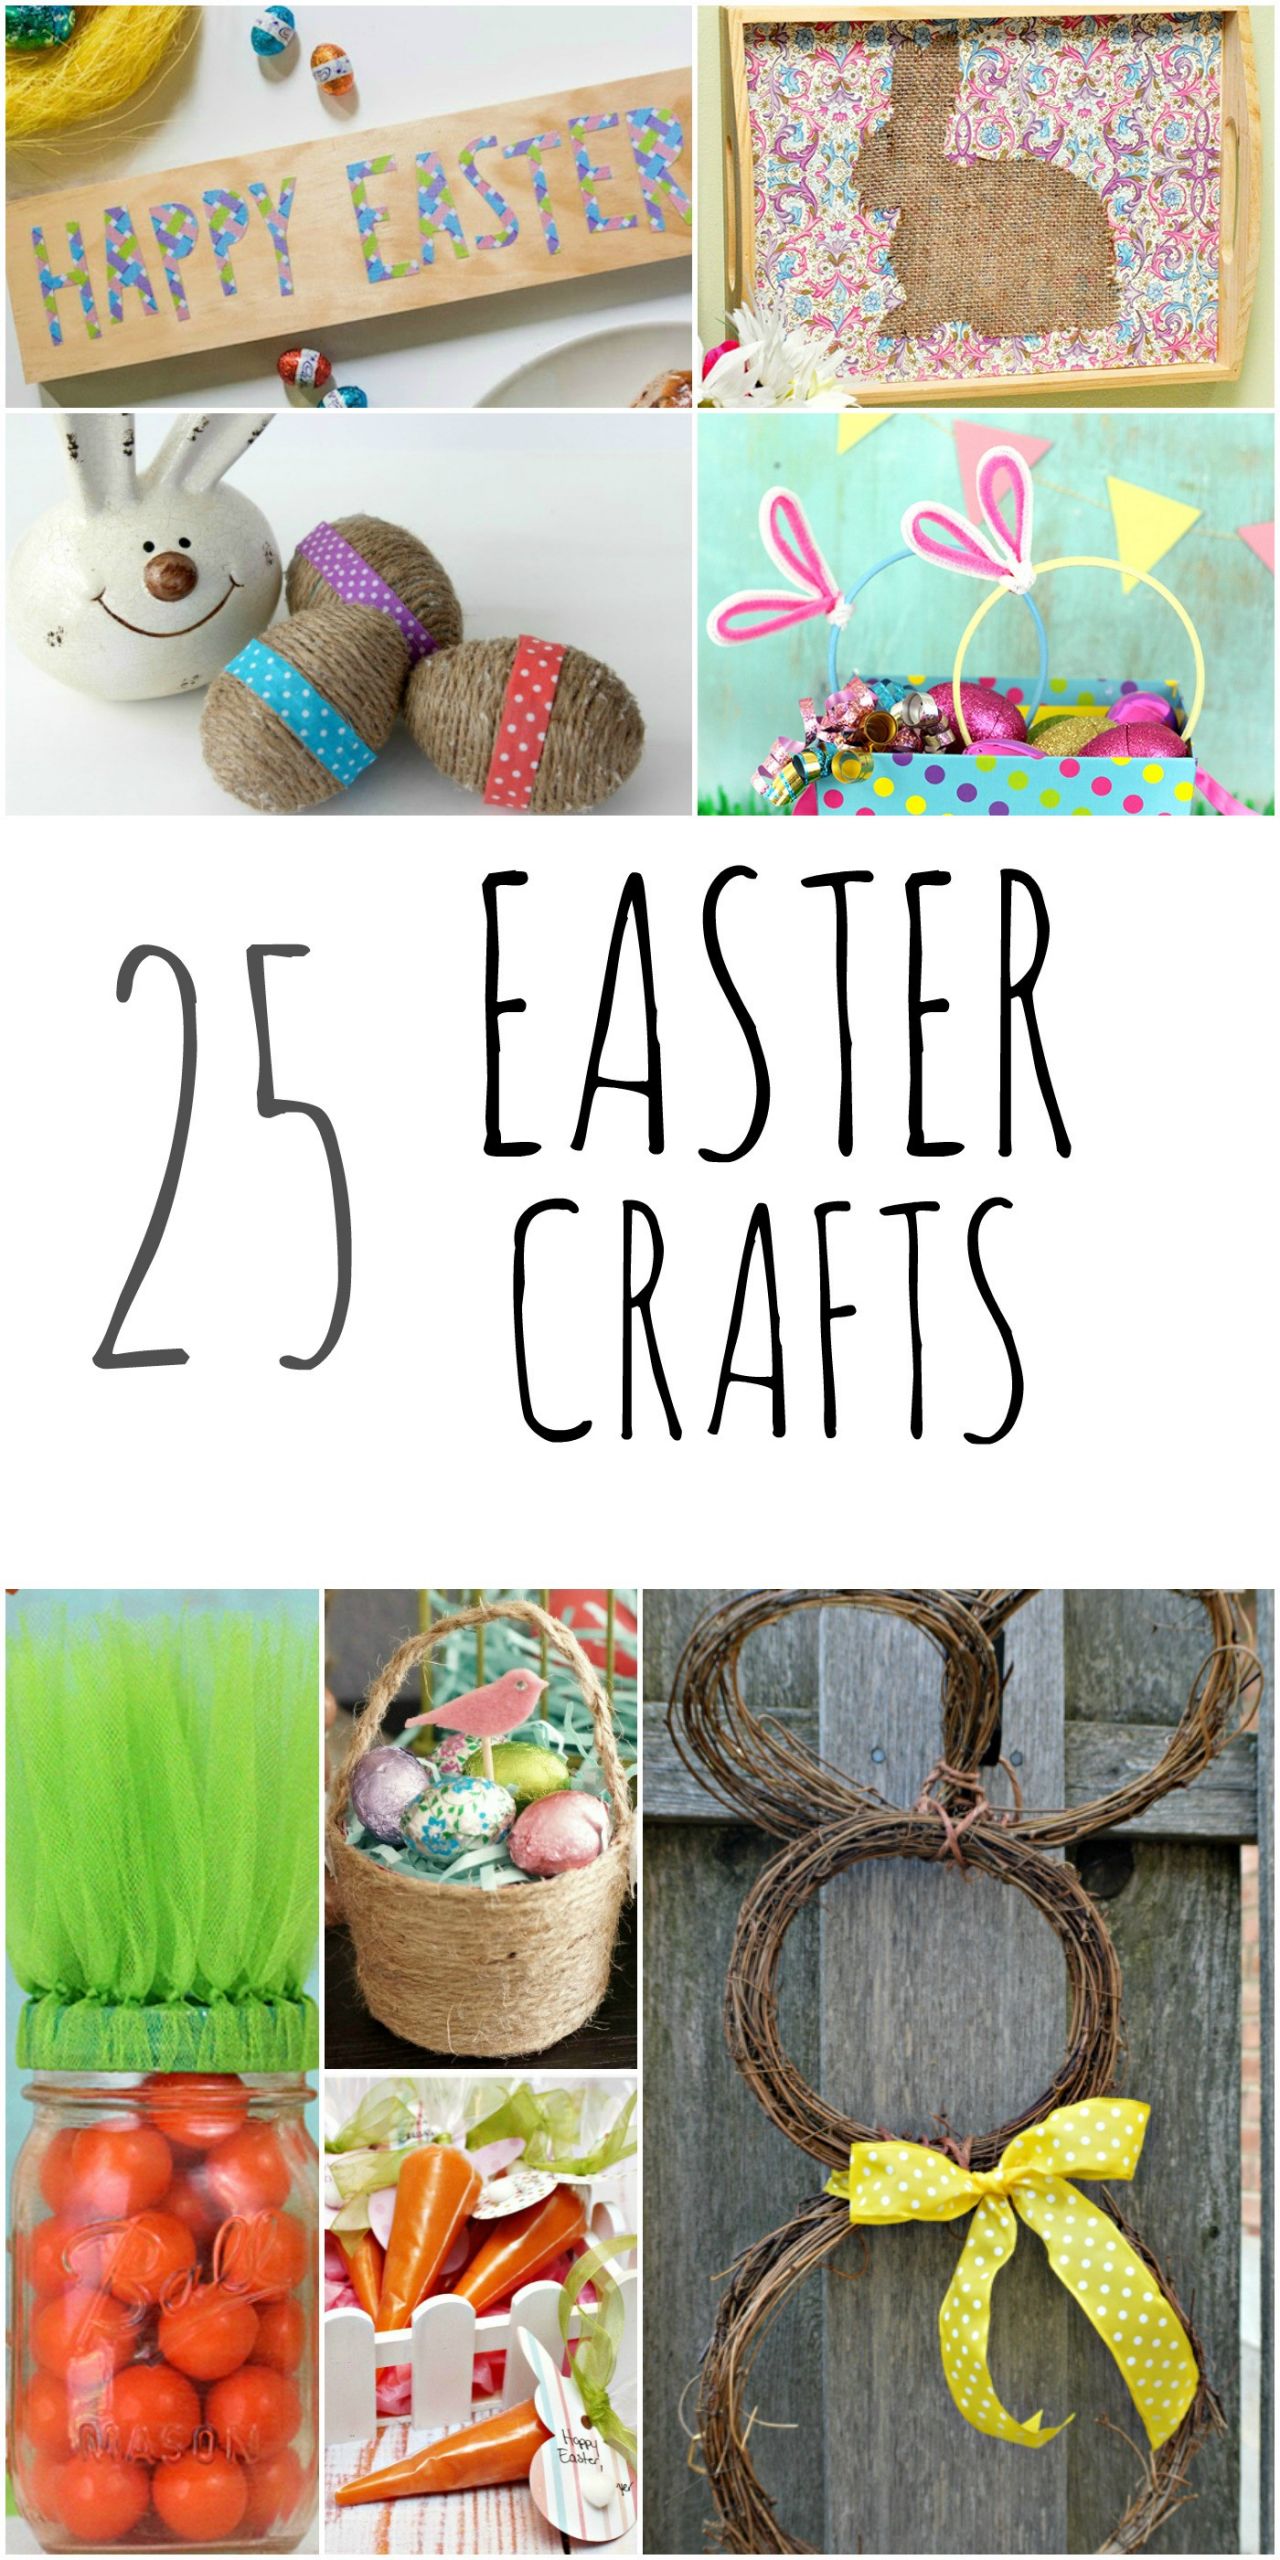 DIY Easter Crafts For Kids
 DIY